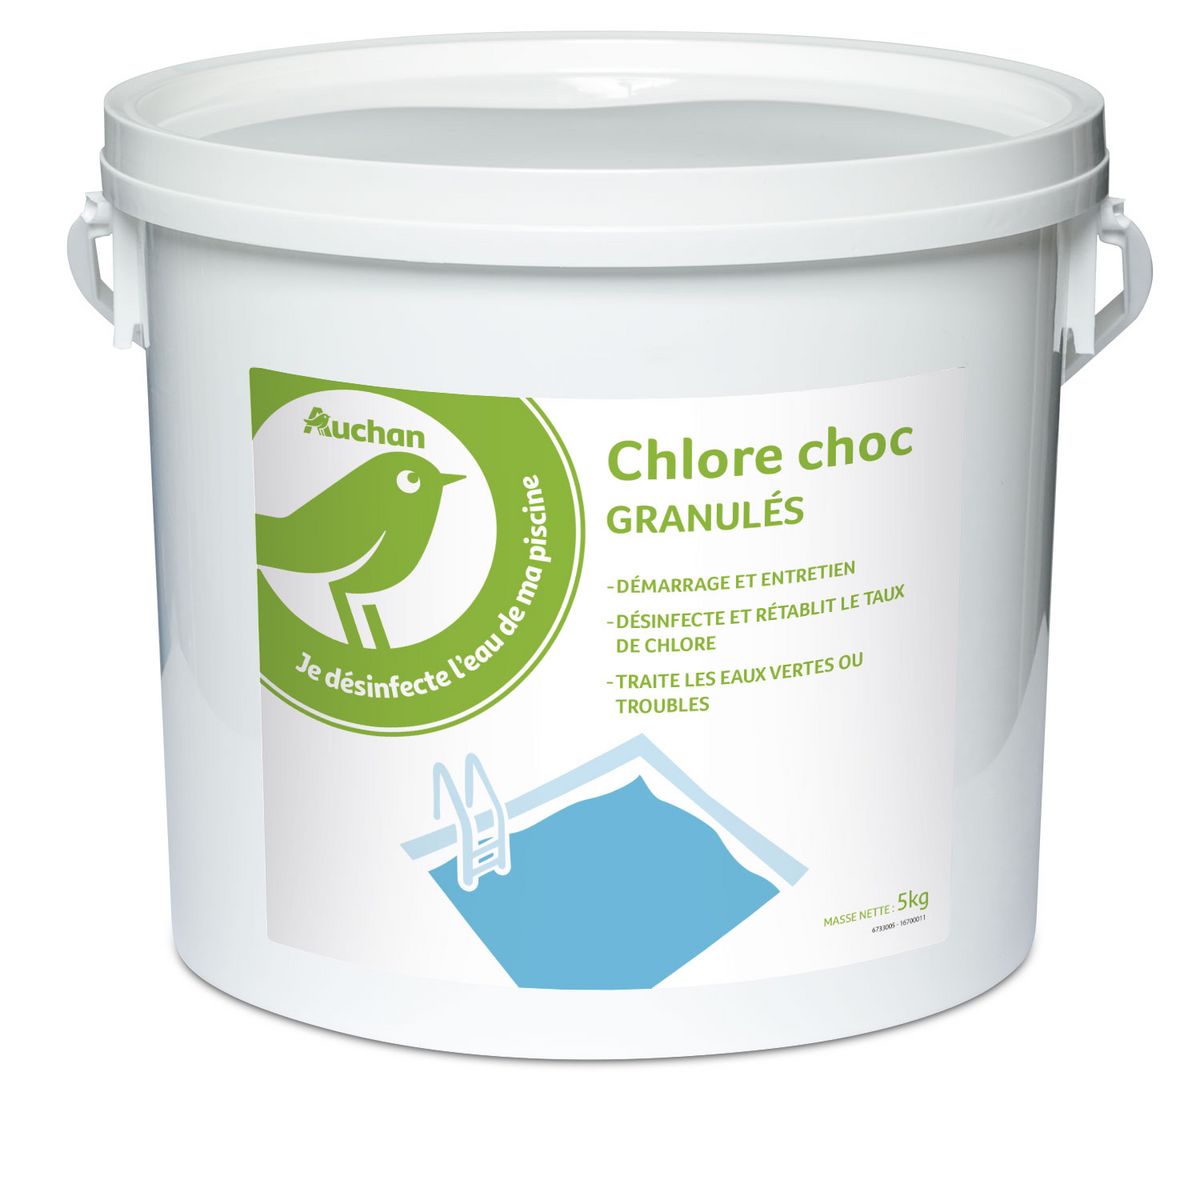 Chlore choc - Seau de 5kg